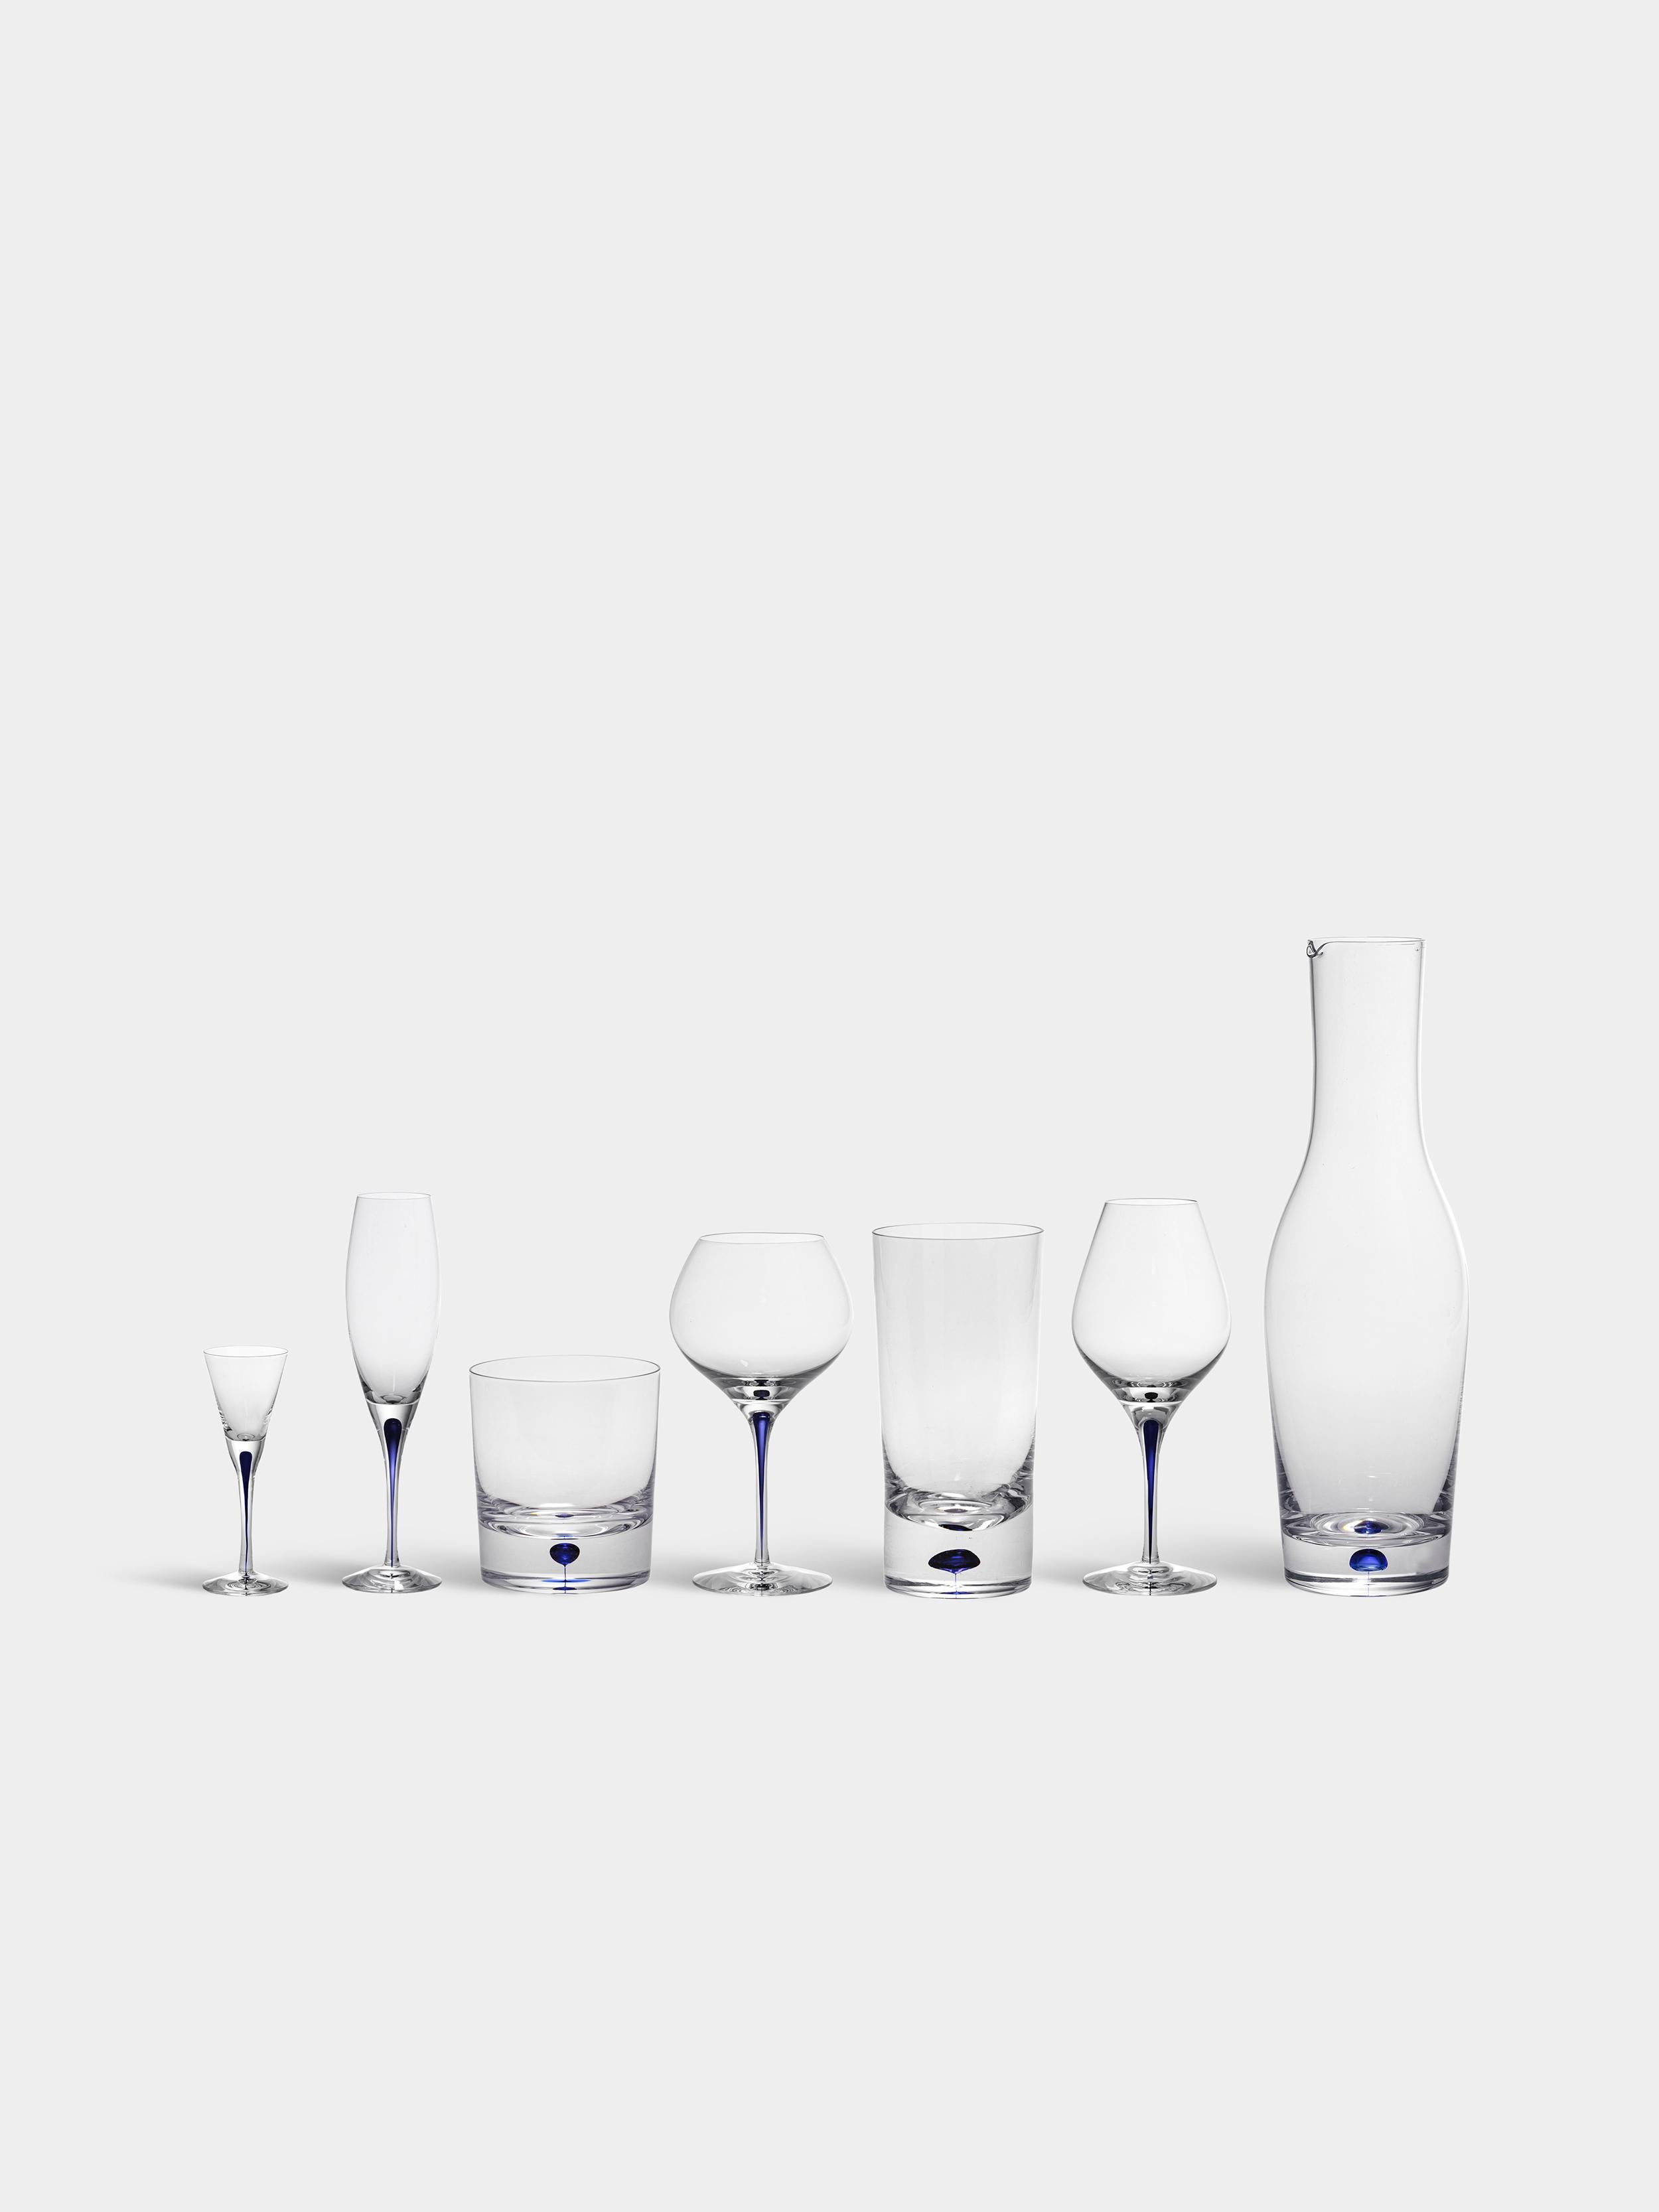 Intermezzo Snaps von Orrefors wurde 1984 entworfen. Das Glas, das 2 oz fasst, ist ideal zum Servieren von Spirituosen. Intermezzo Snaps wird in Schweden von erfahrenen Glasbläsern mundgeblasen und hat einen blauen Tropfen im Inneren des Stiels